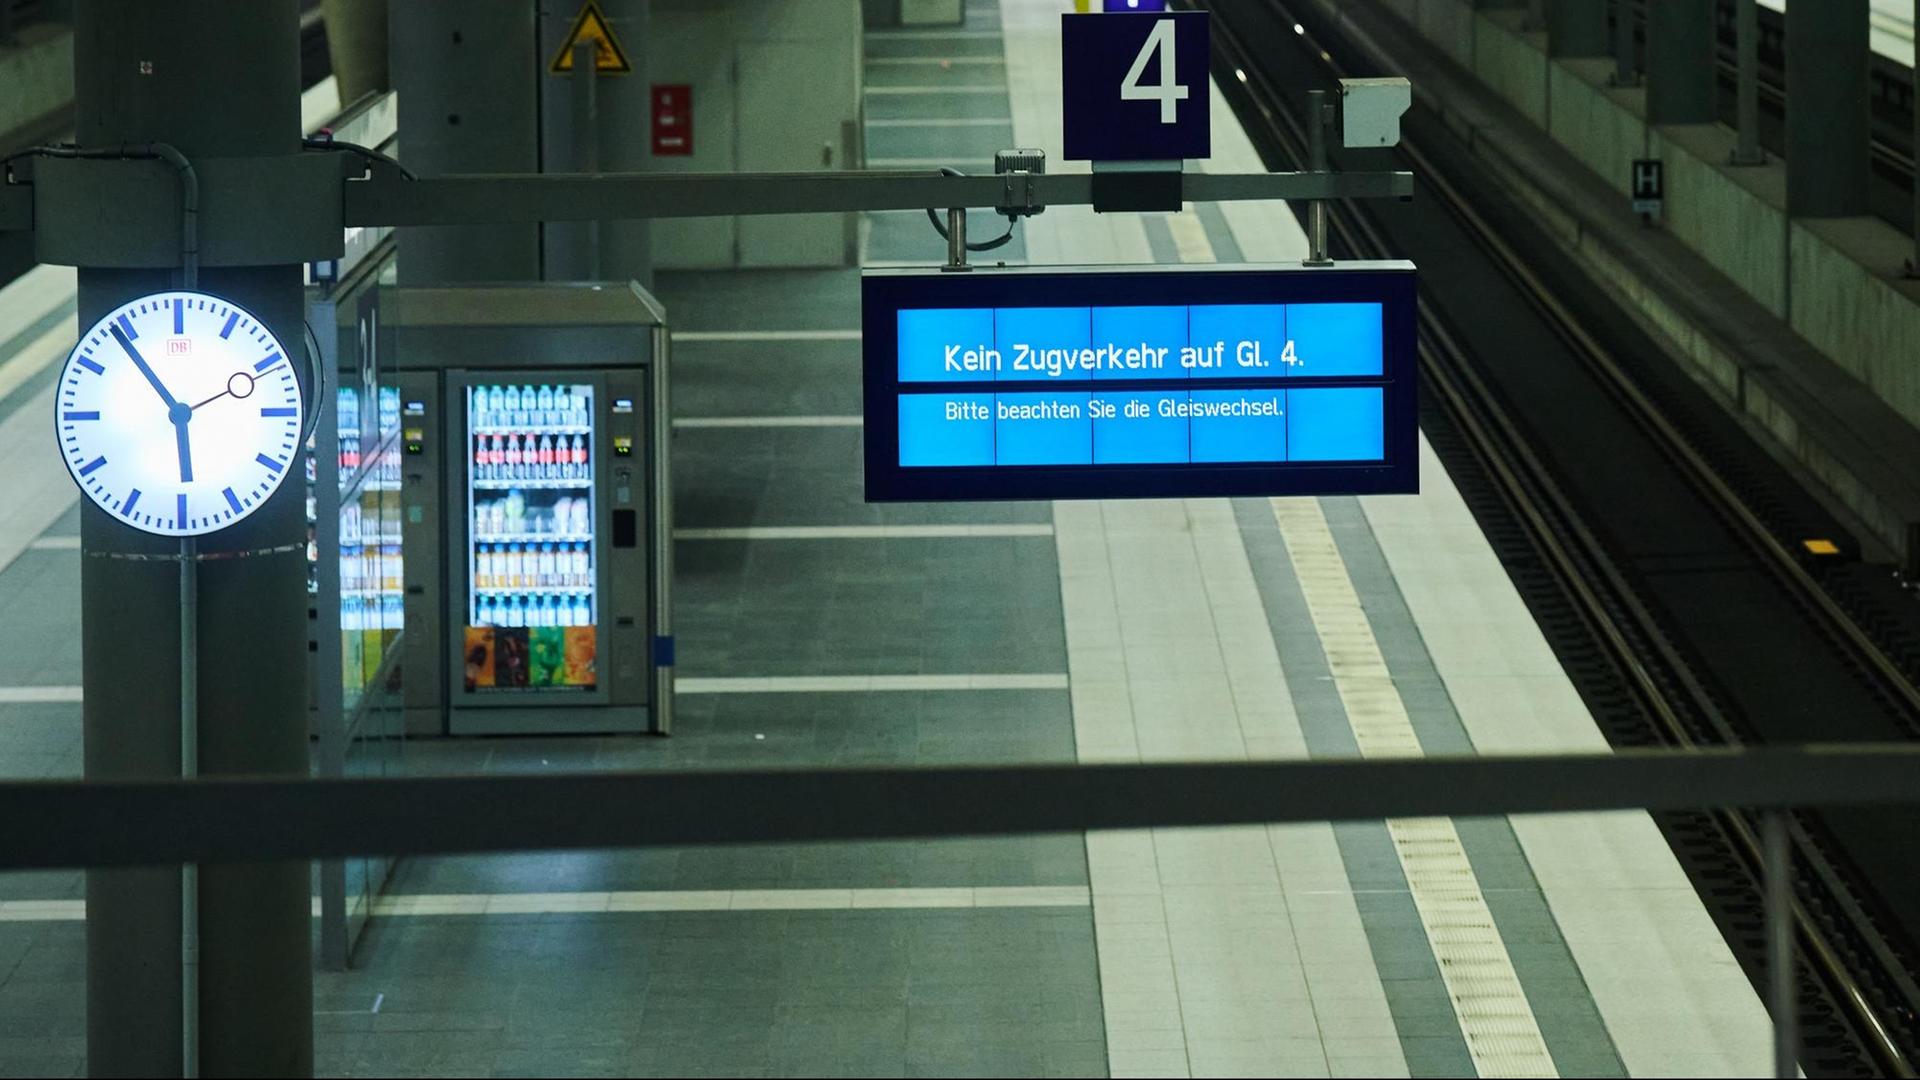 Ein leerer Bahnsteig. Auf der Anzeige-Tafel steht: "Kein Zug-Verkehr auf Gleis 4"